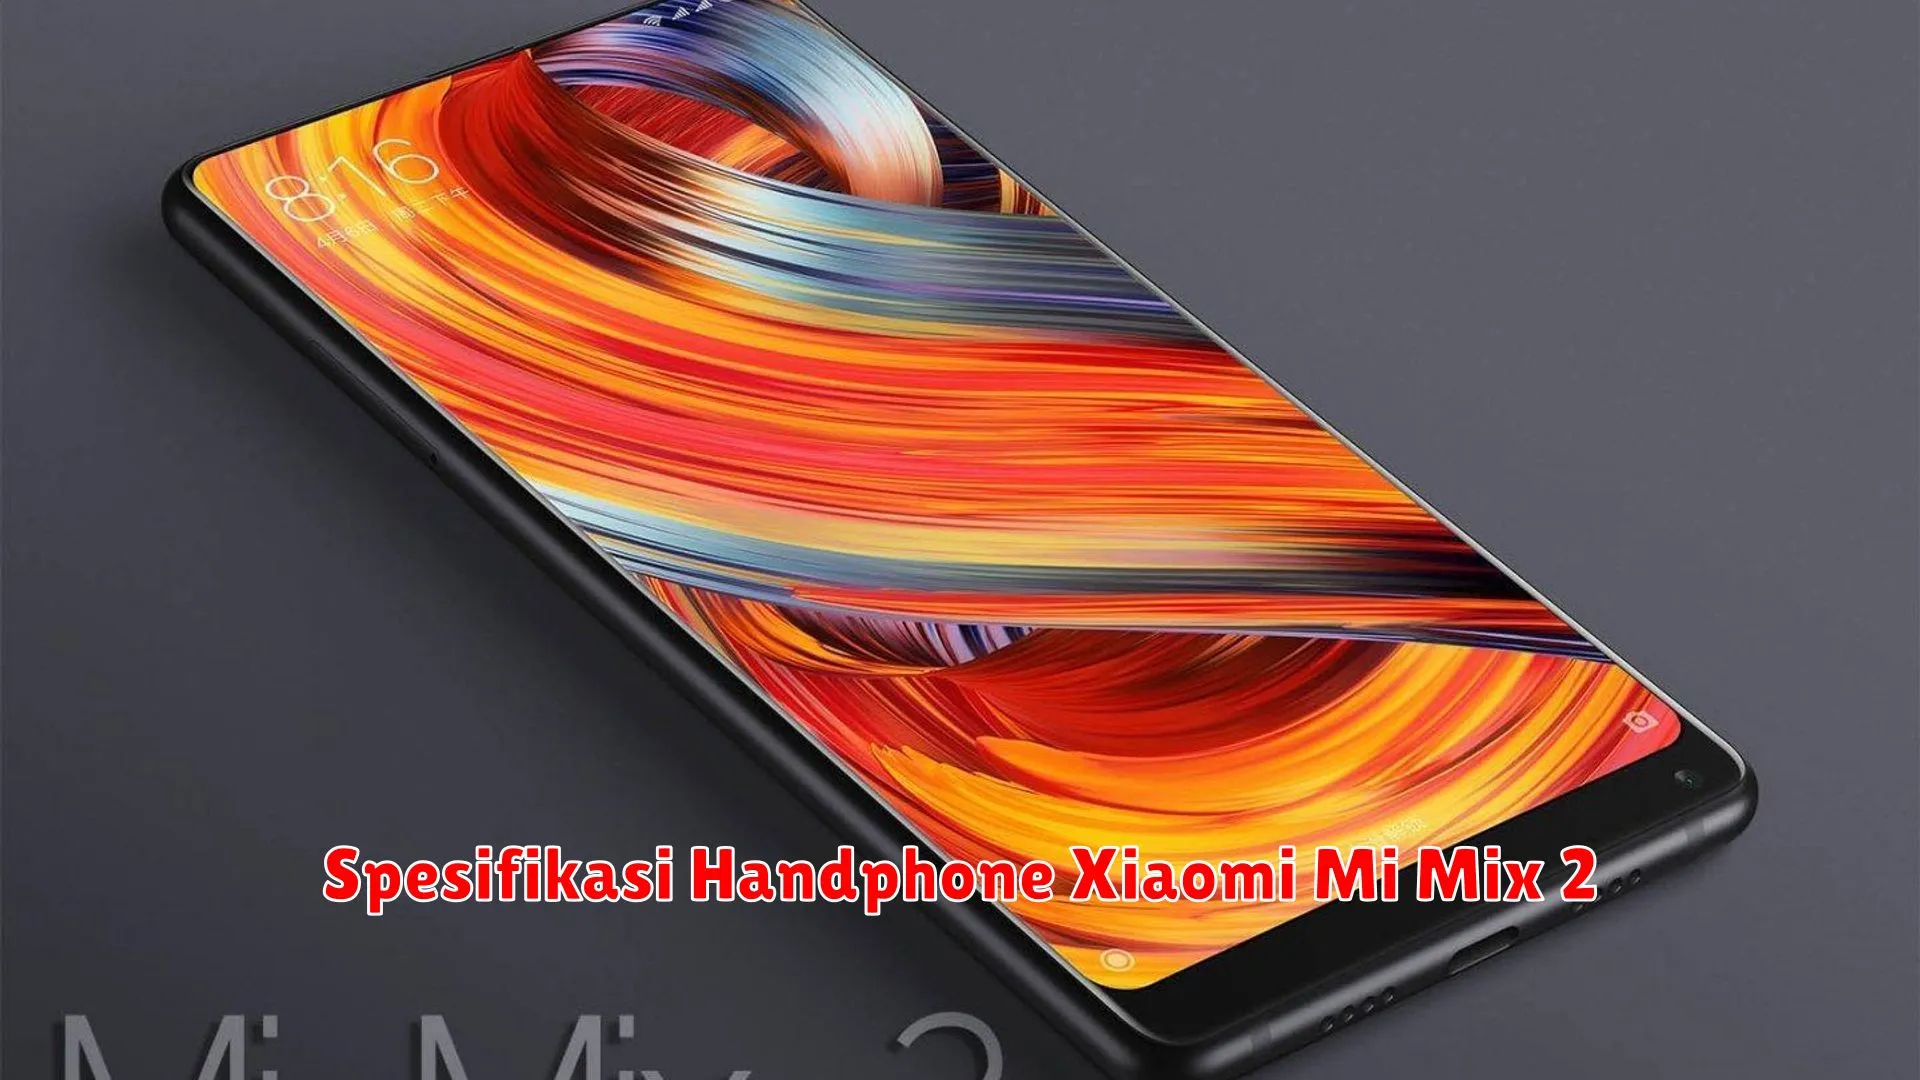 Spesifikasi Handphone Xiaomi Mi Mix 2